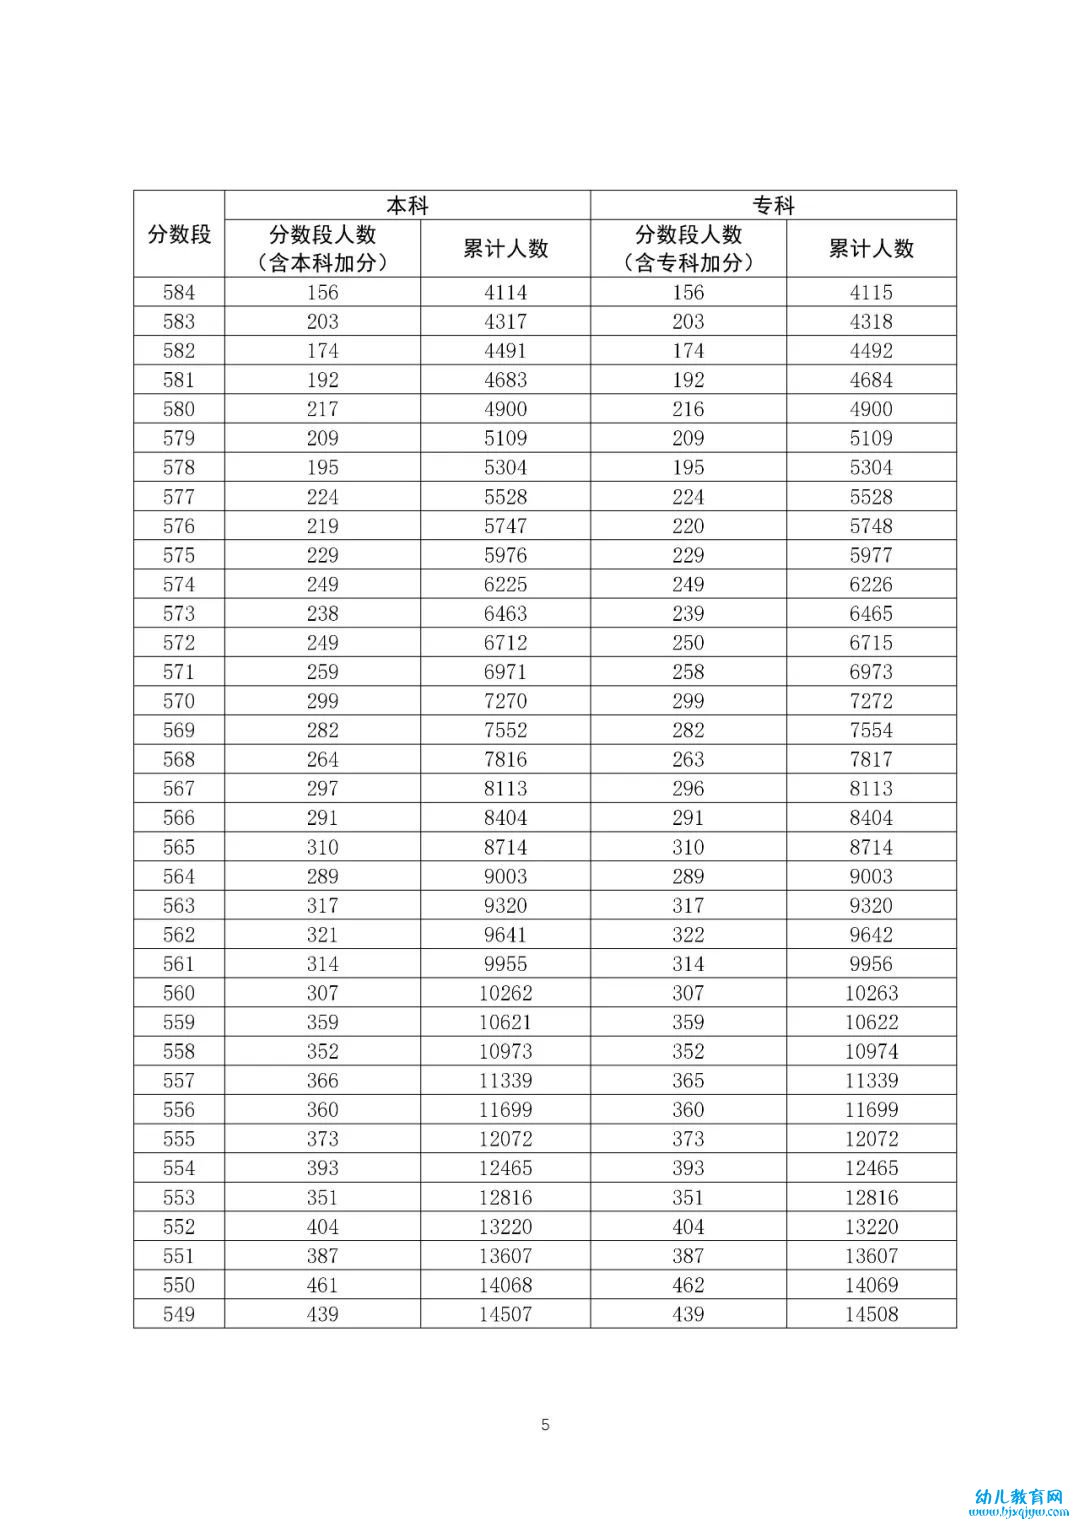 八省联考成绩对照:广东2020高考文史类一分一段表